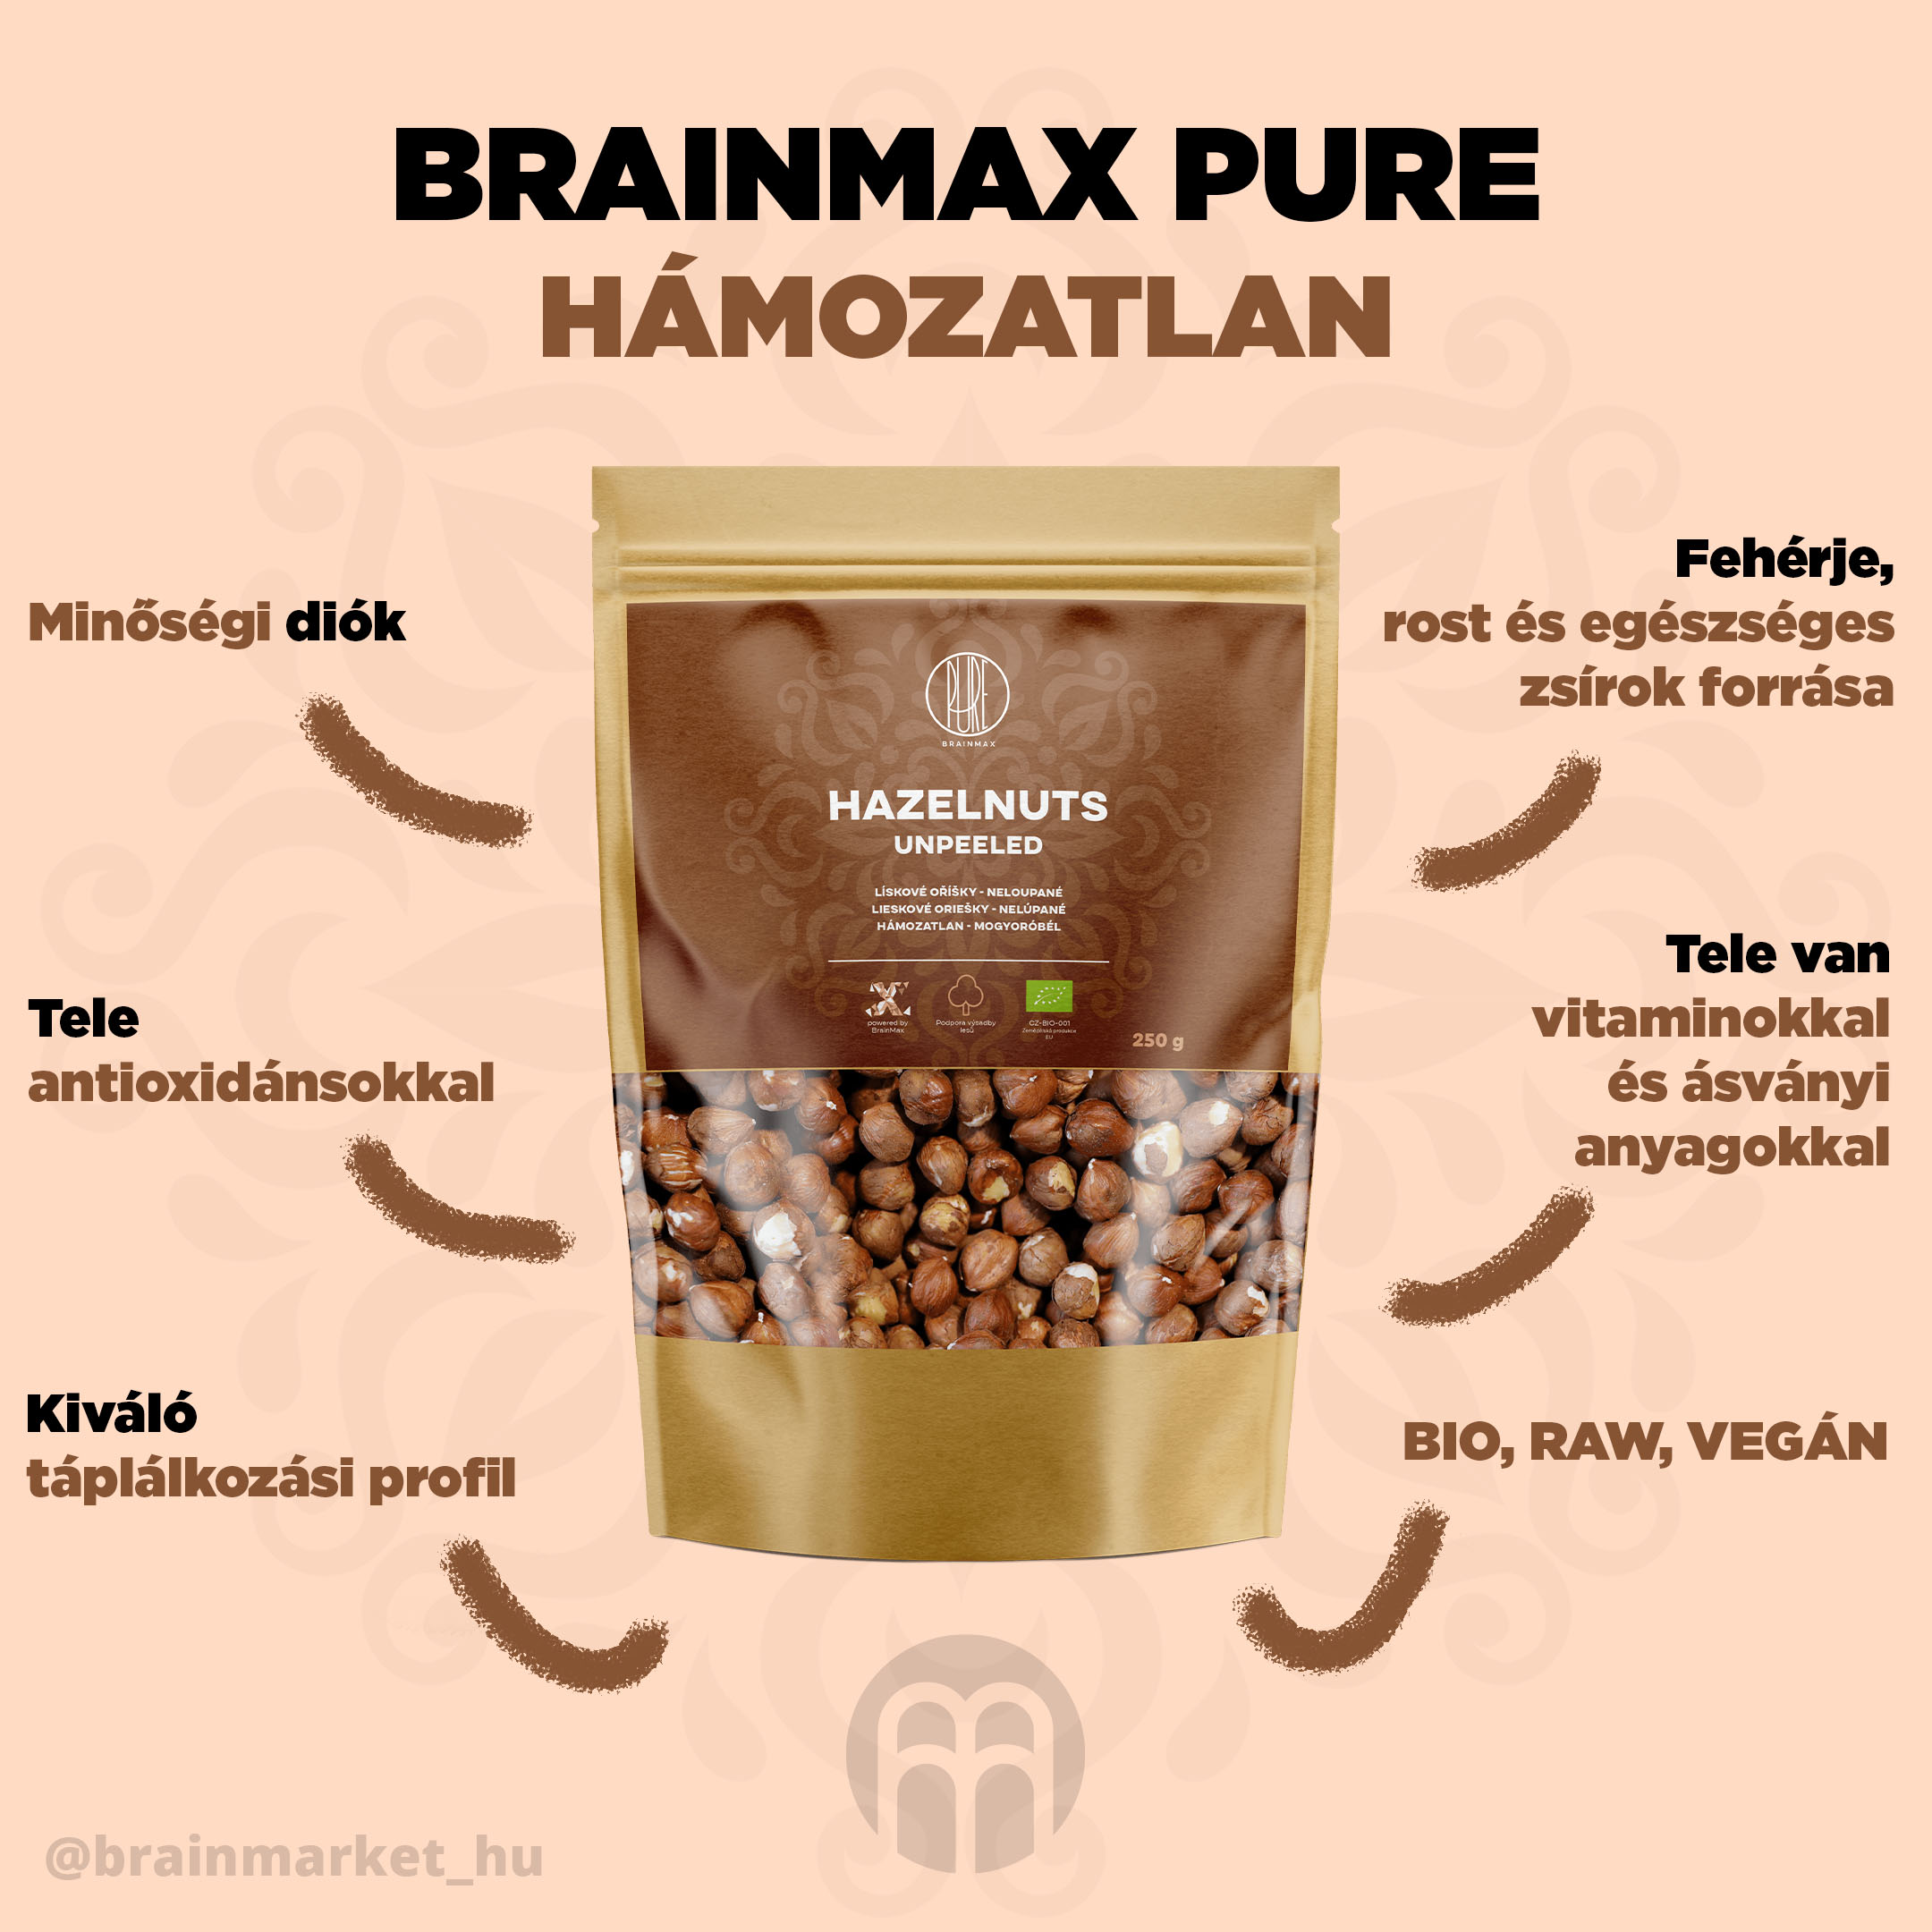 mandula-blansirovane-brainmax-pure-infographics-brainmarket-cz